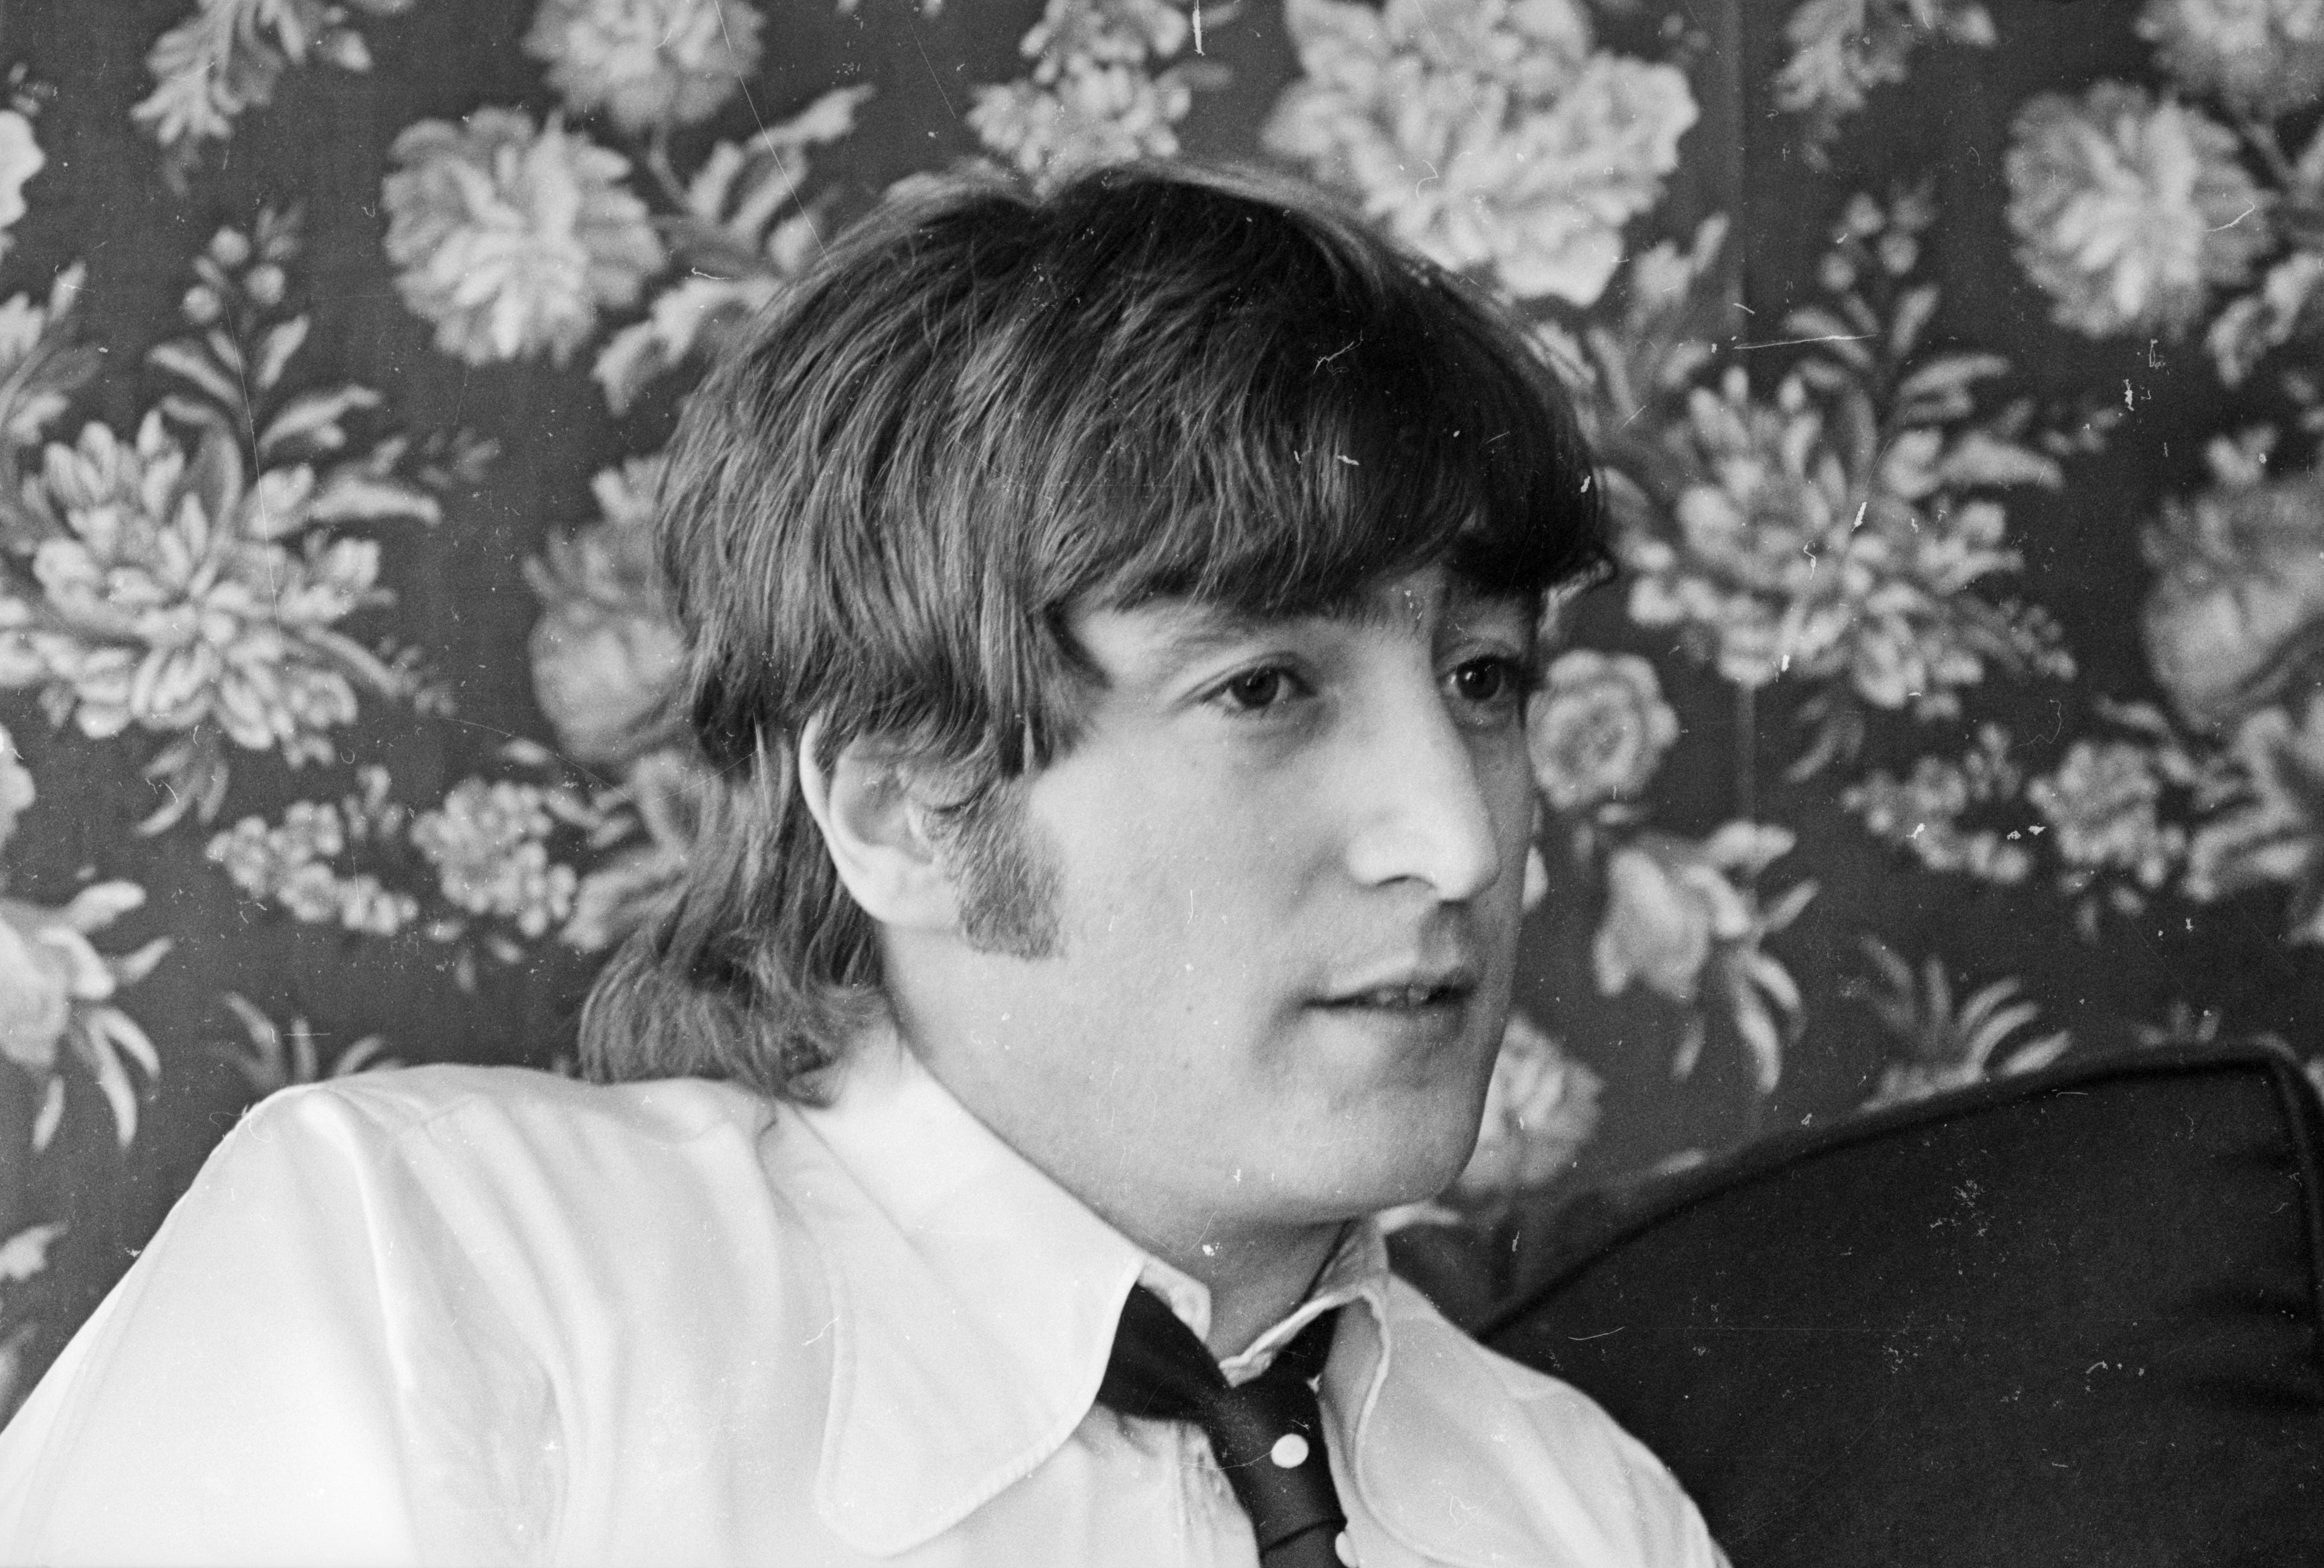 The Beatles' John Lennon wearing a tie